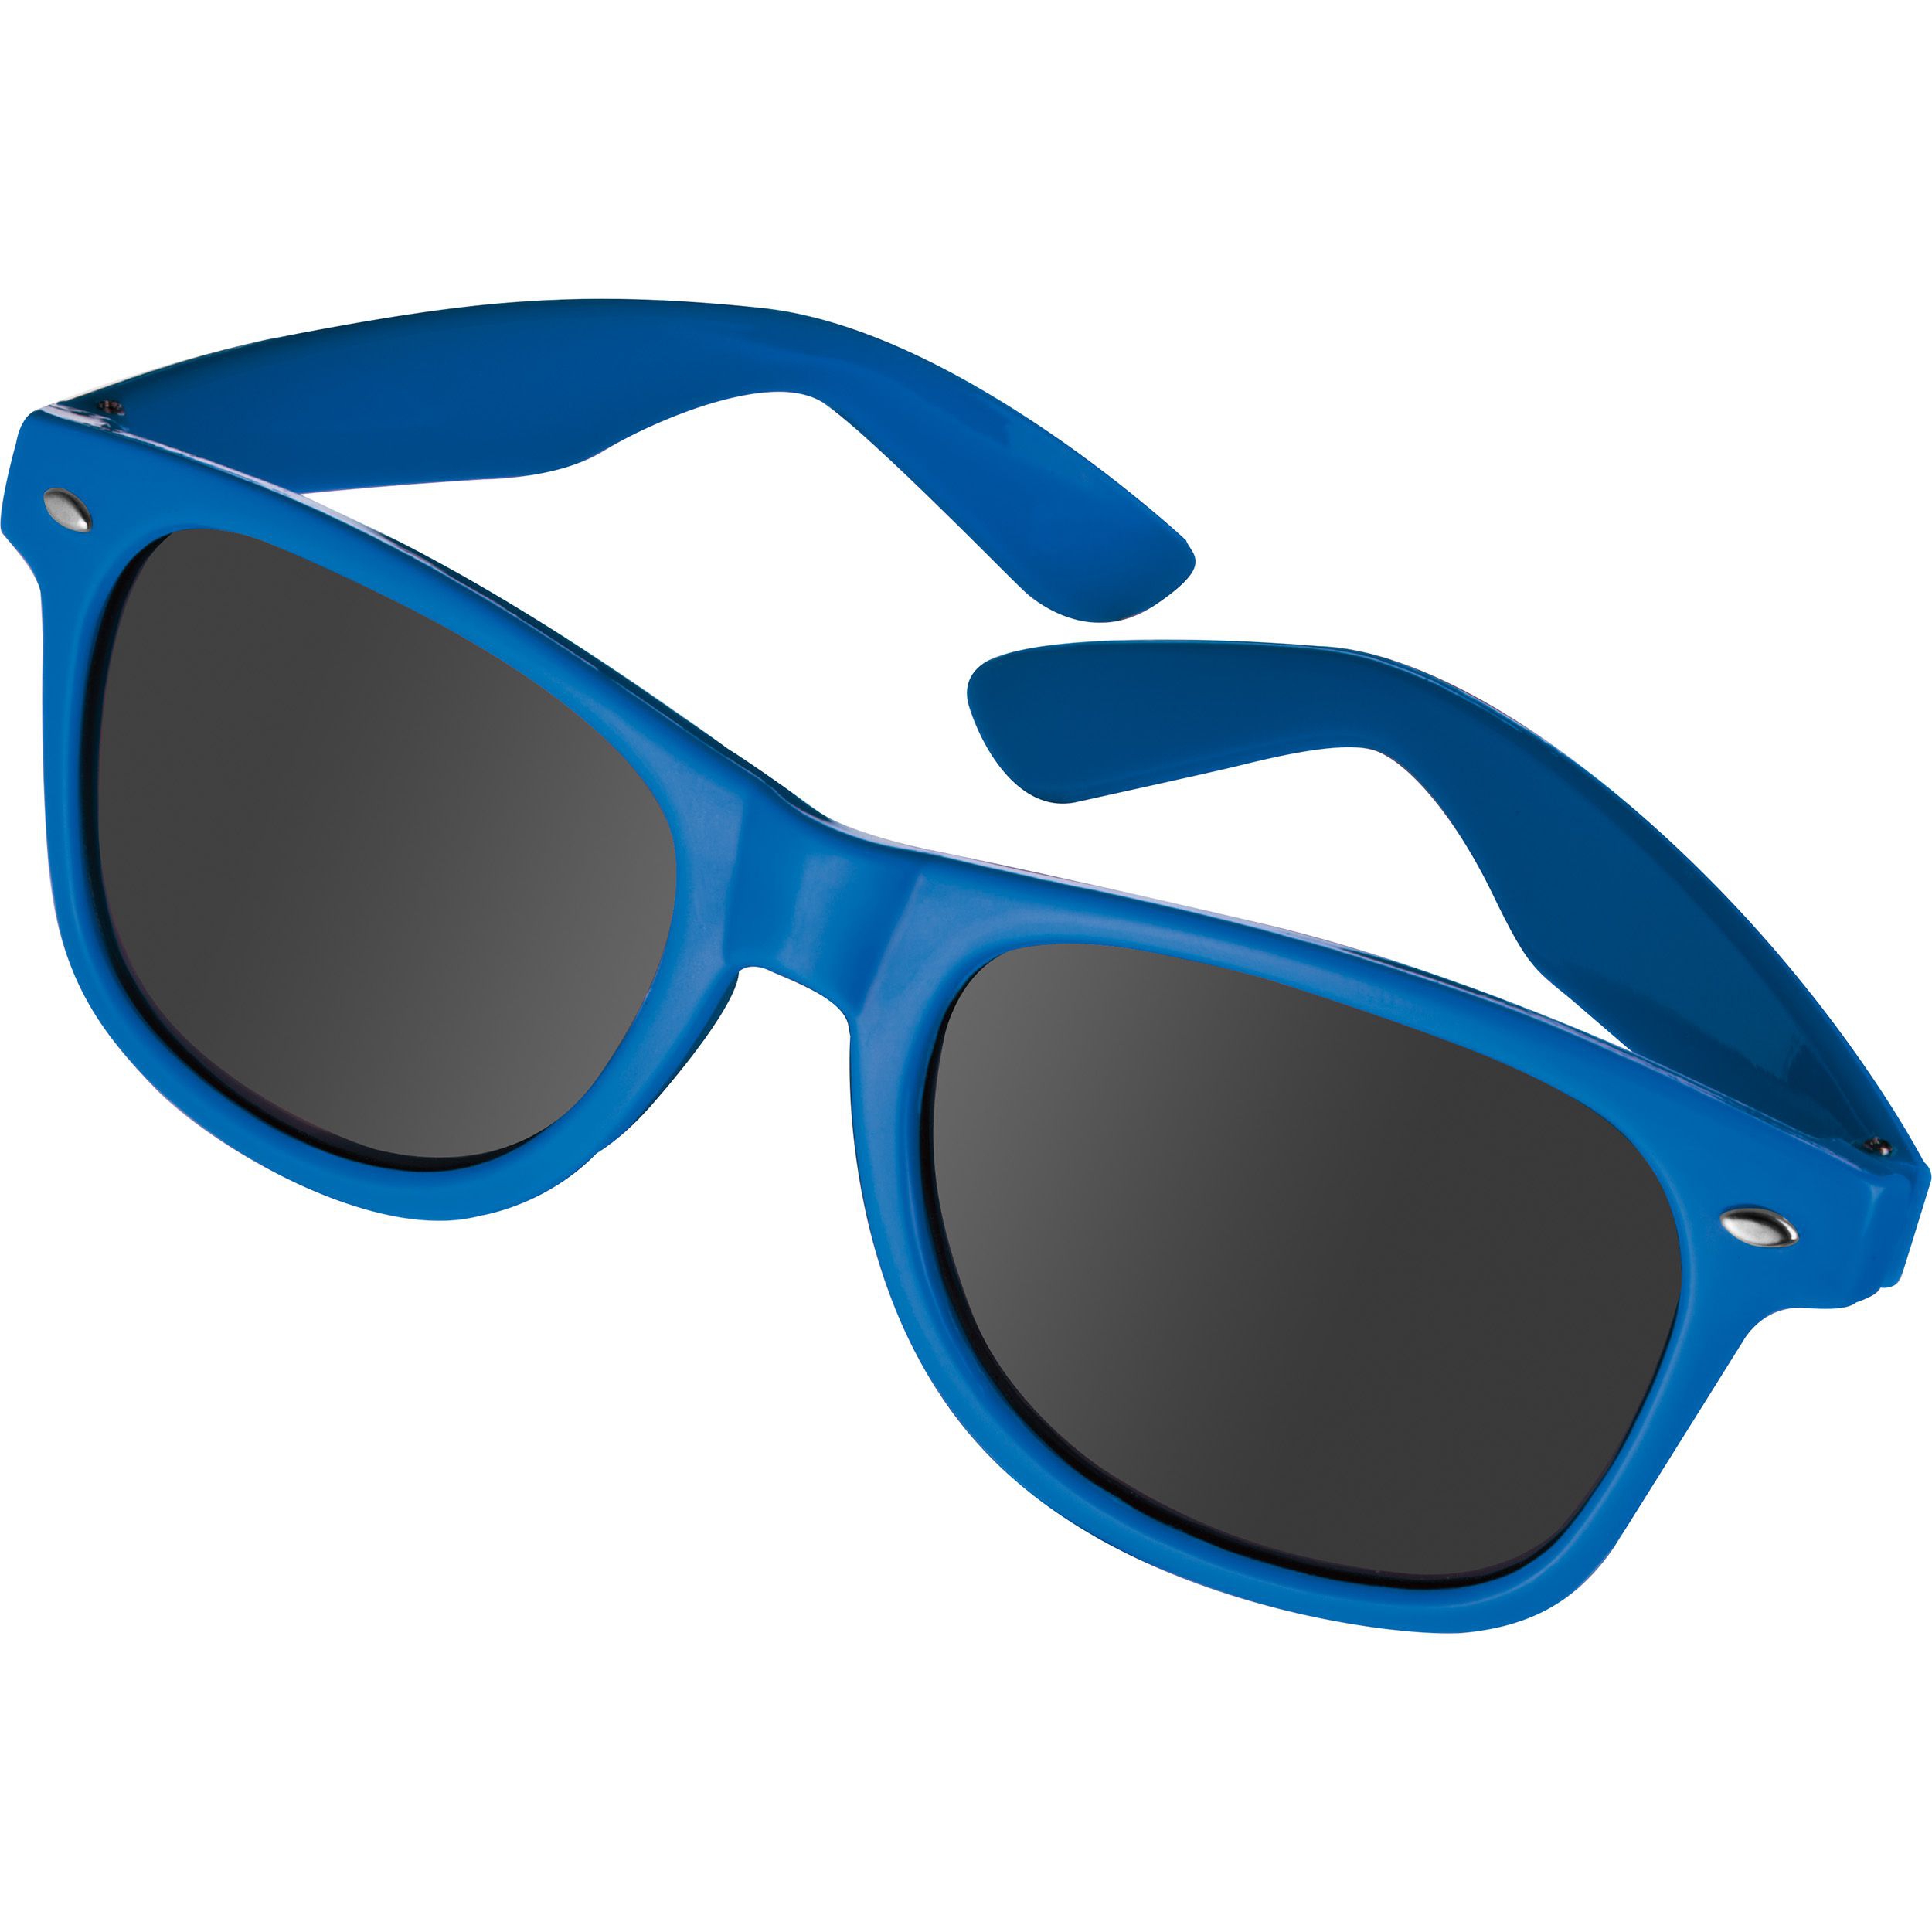 Sonnenbrille aus Kunststoff im "Nerdlook", UV 400 Schutz, blau